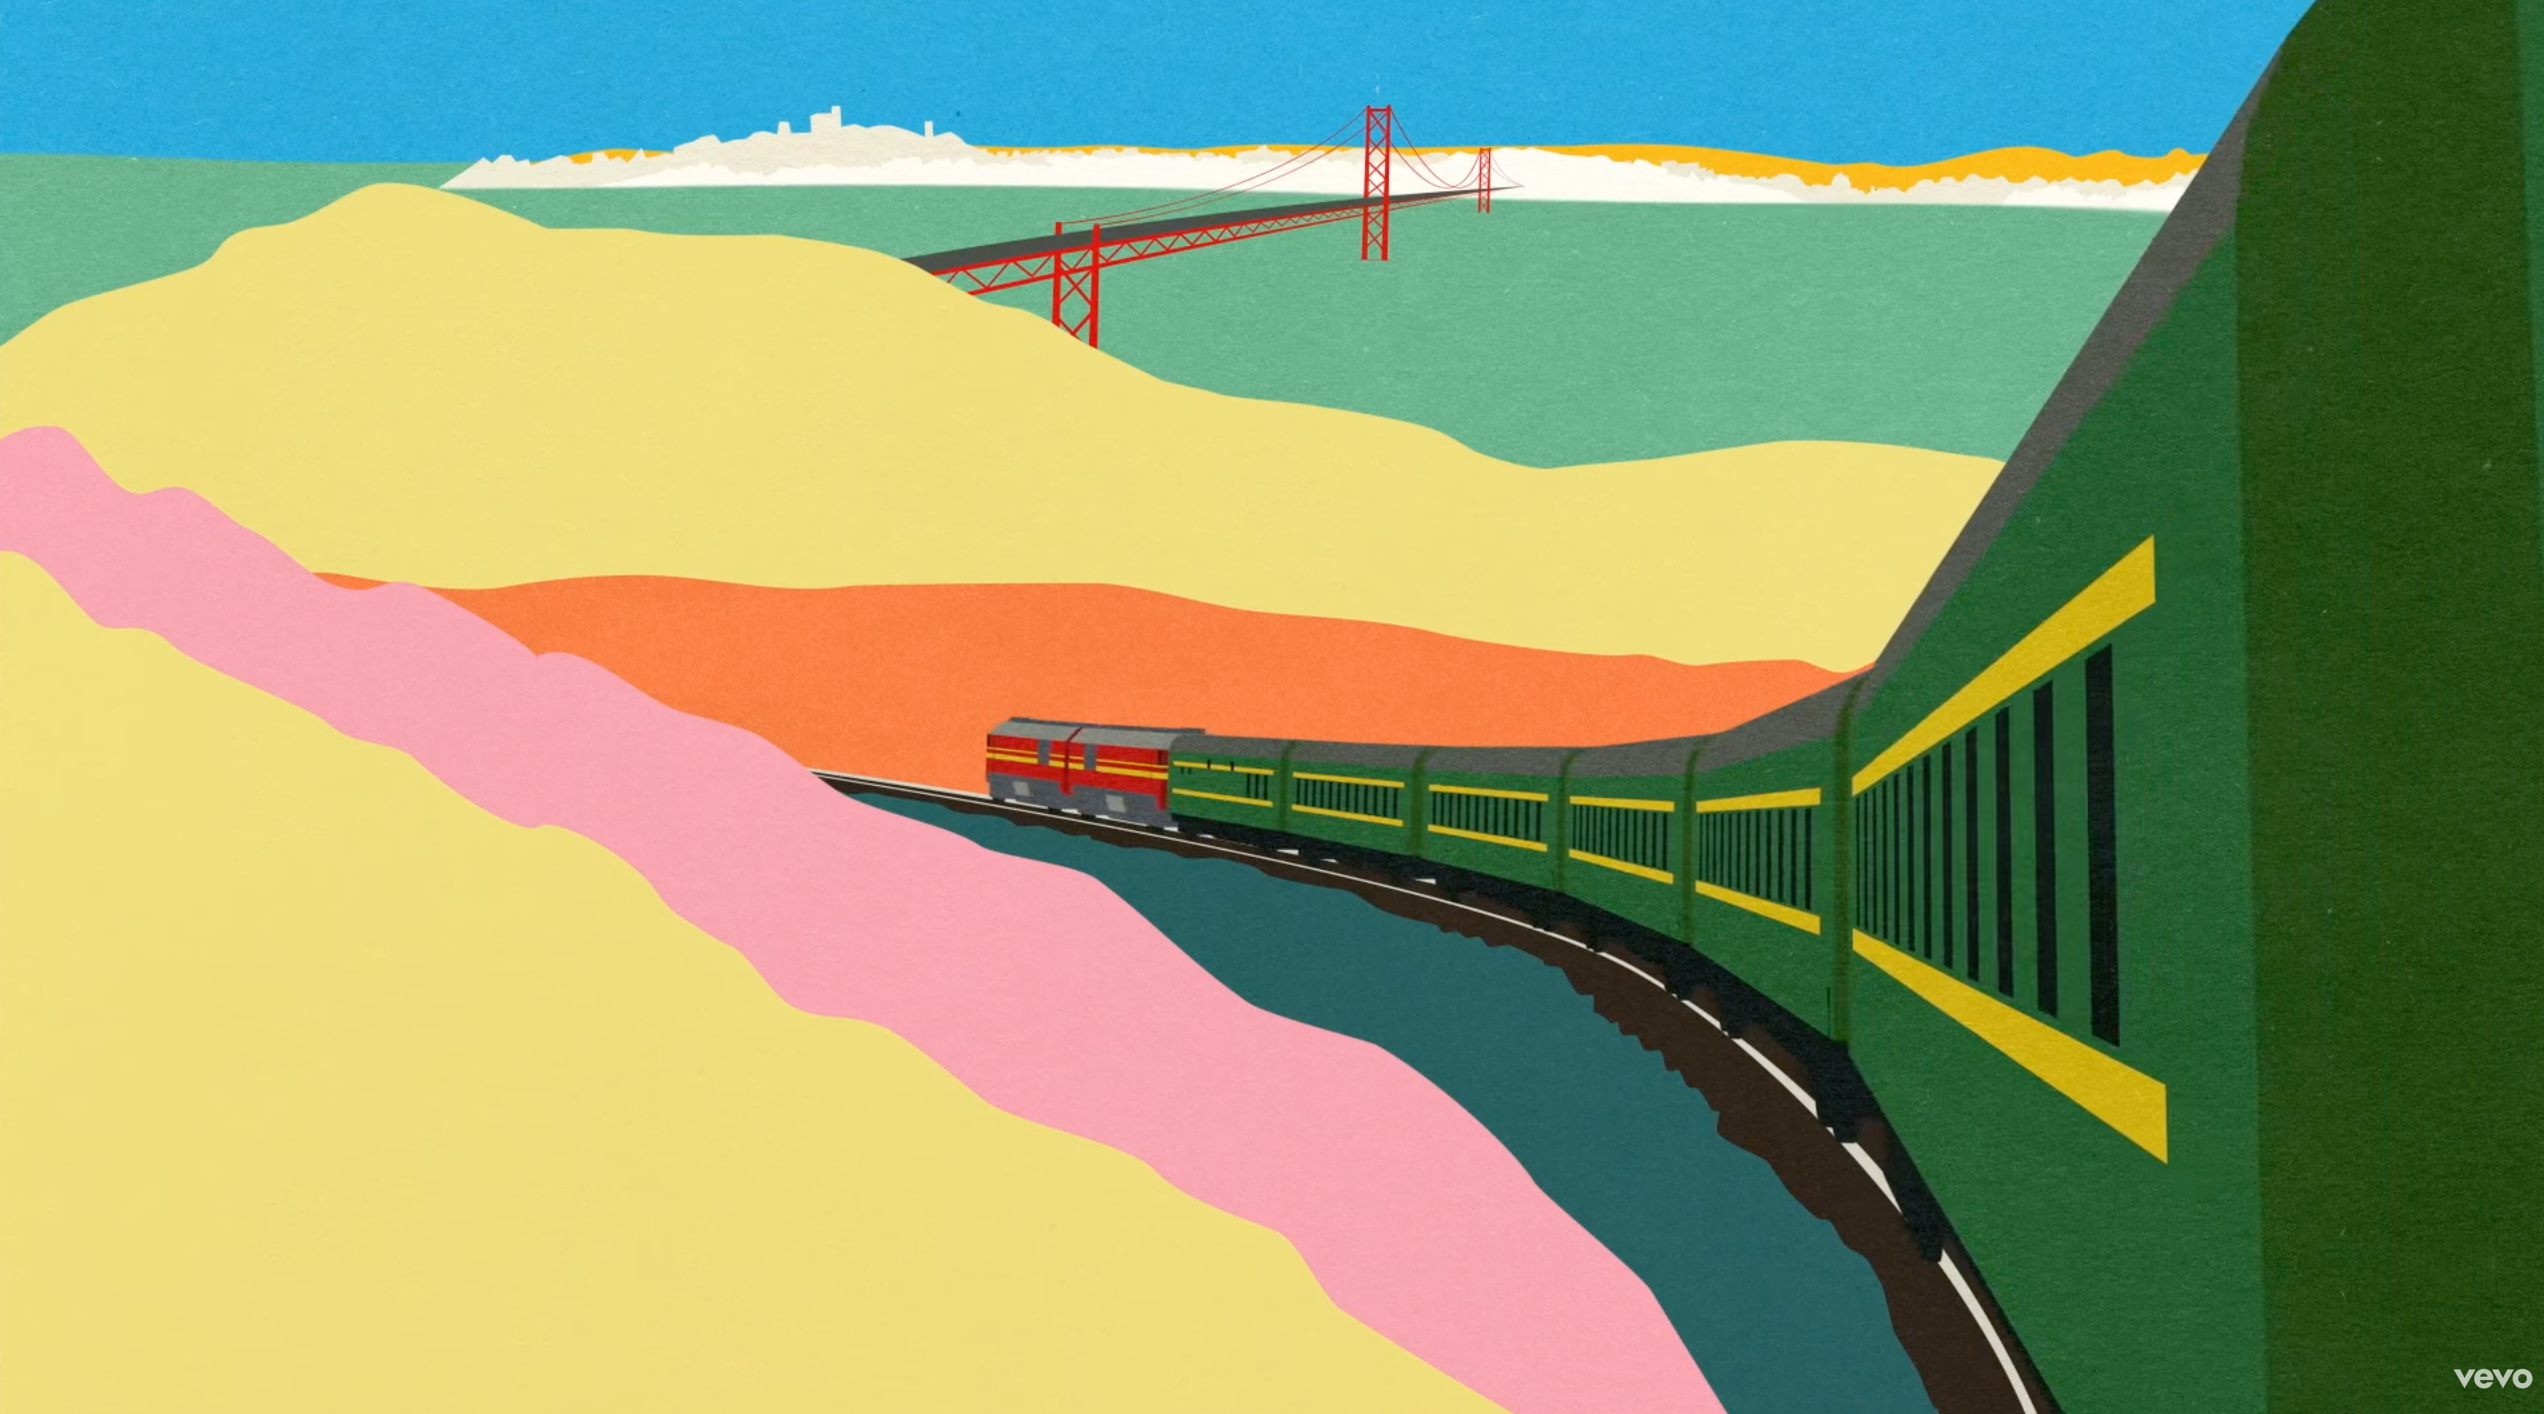 "L'aupaire, lùisa - Lisbon" — A colorful train painting.